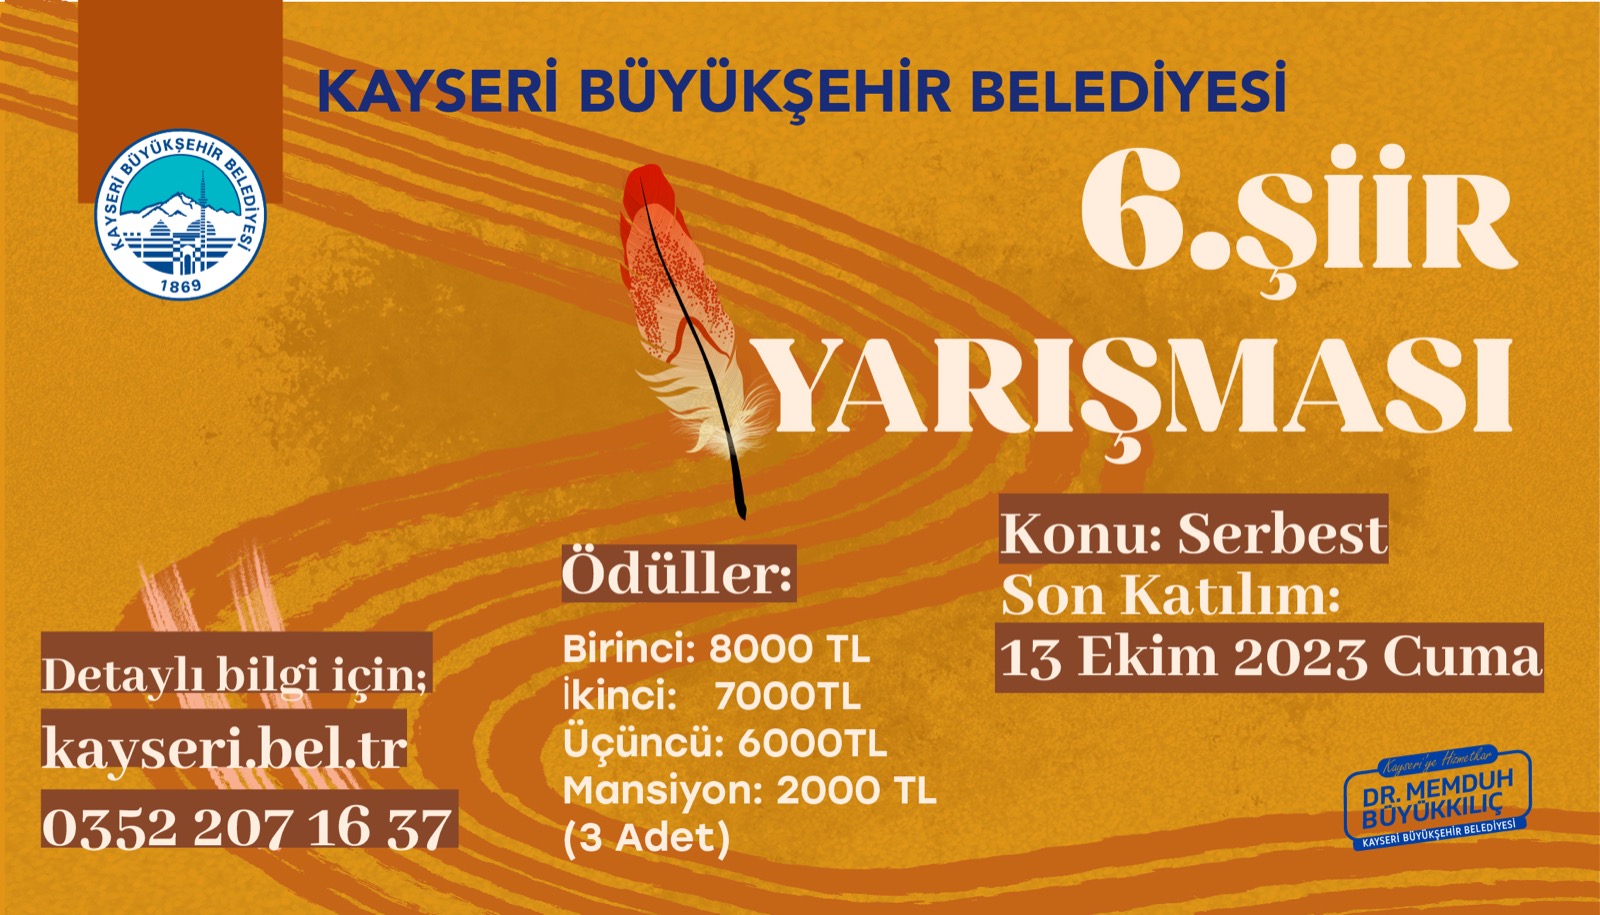 Kayseri Büyükşehir Belediyesi 6. Şiir Yarışması